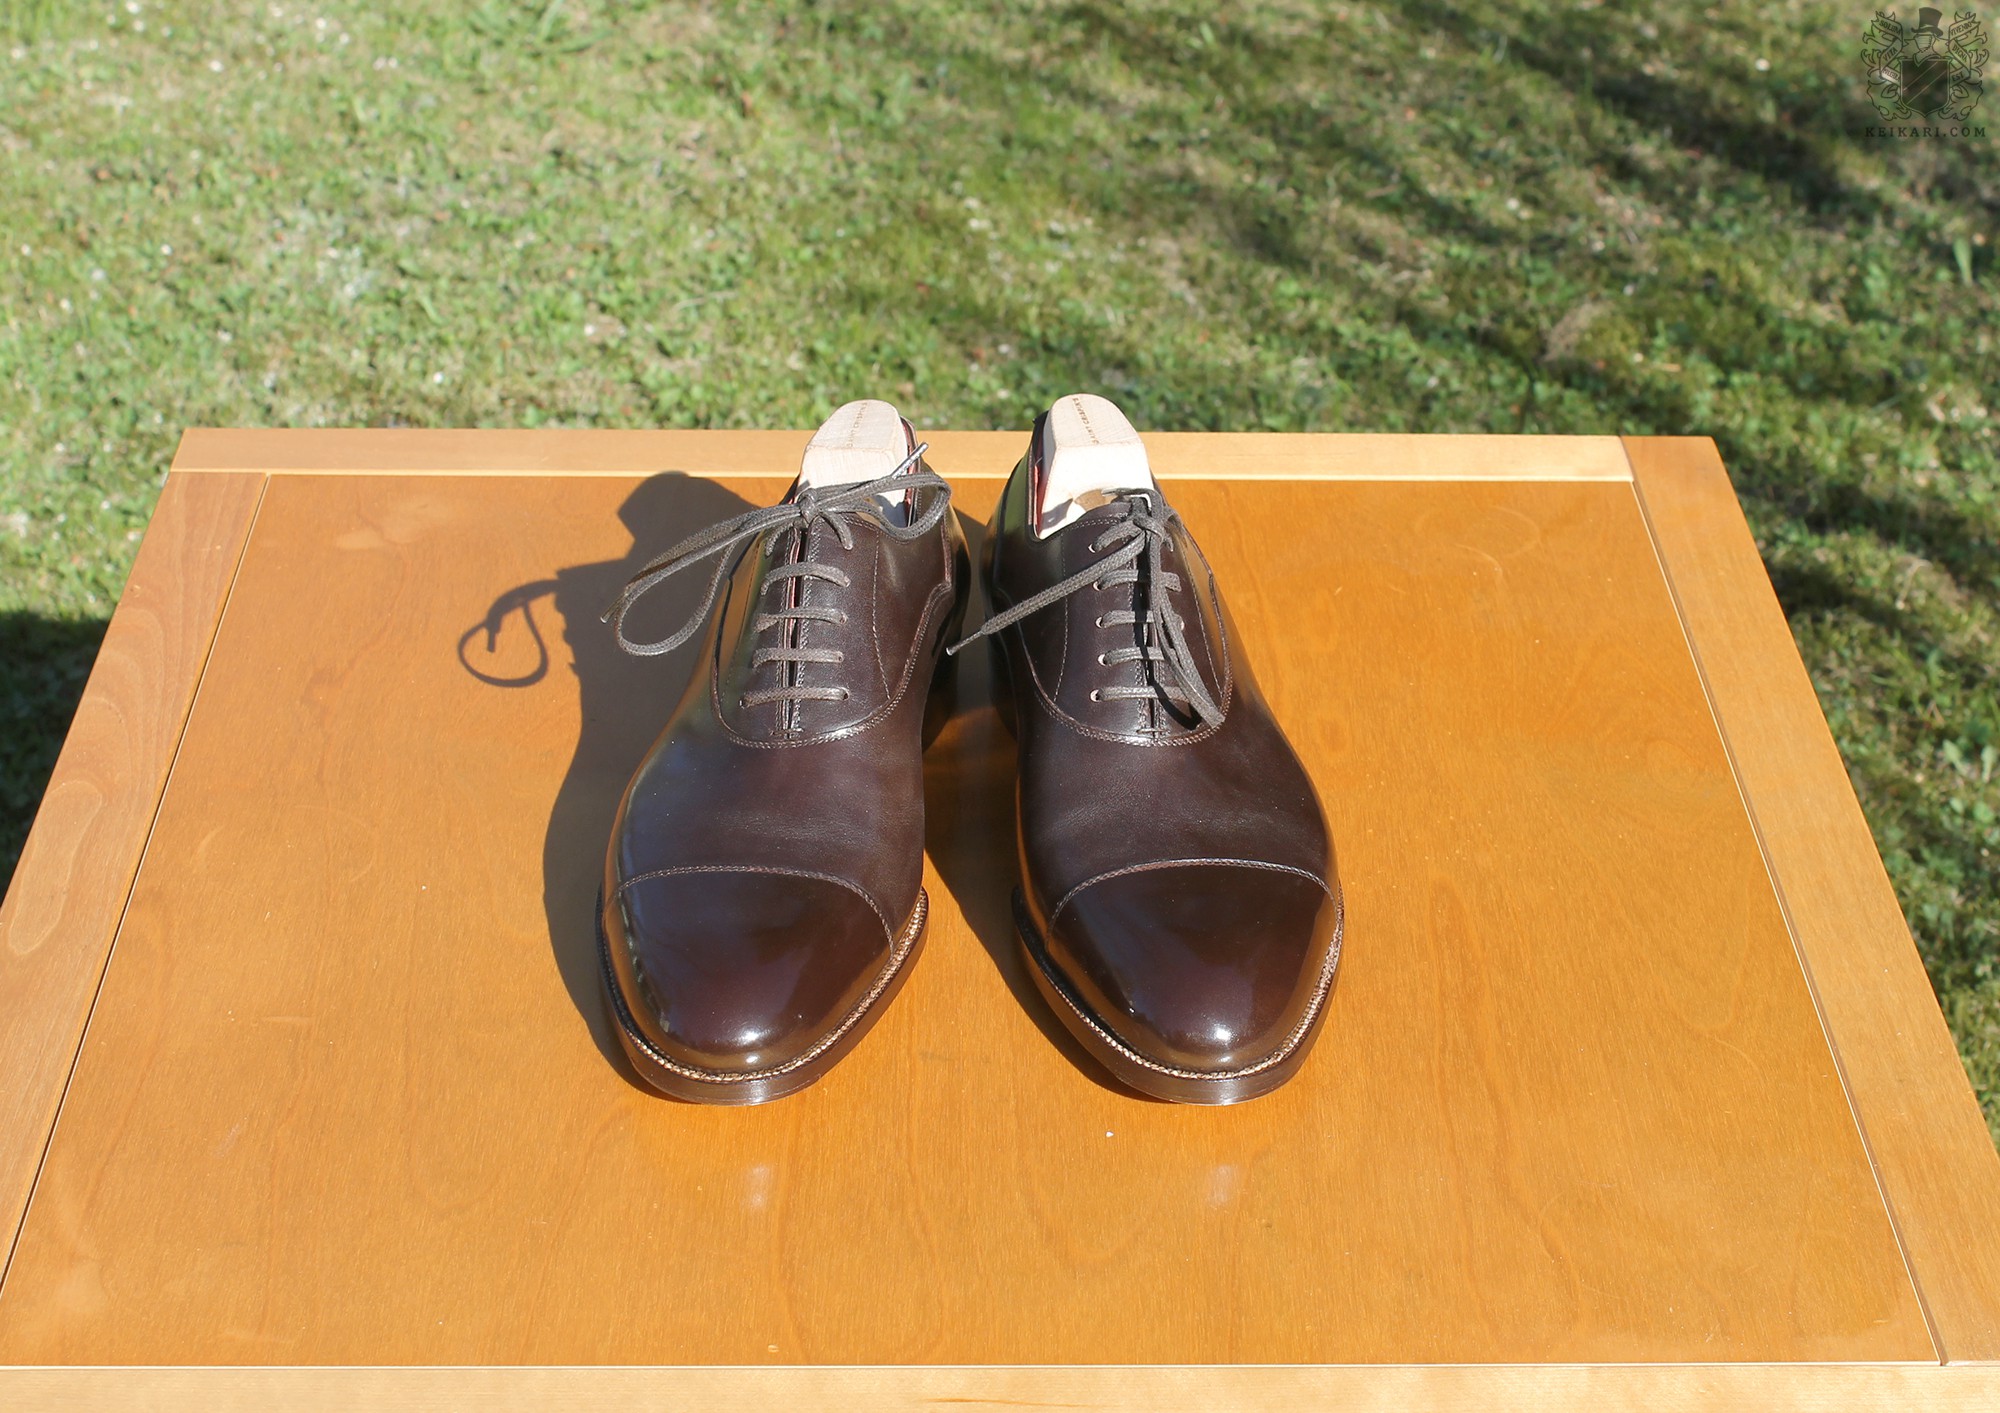 Anatomy_of_Saint_Crispin's_shoes_at_Keikari_dot_com03